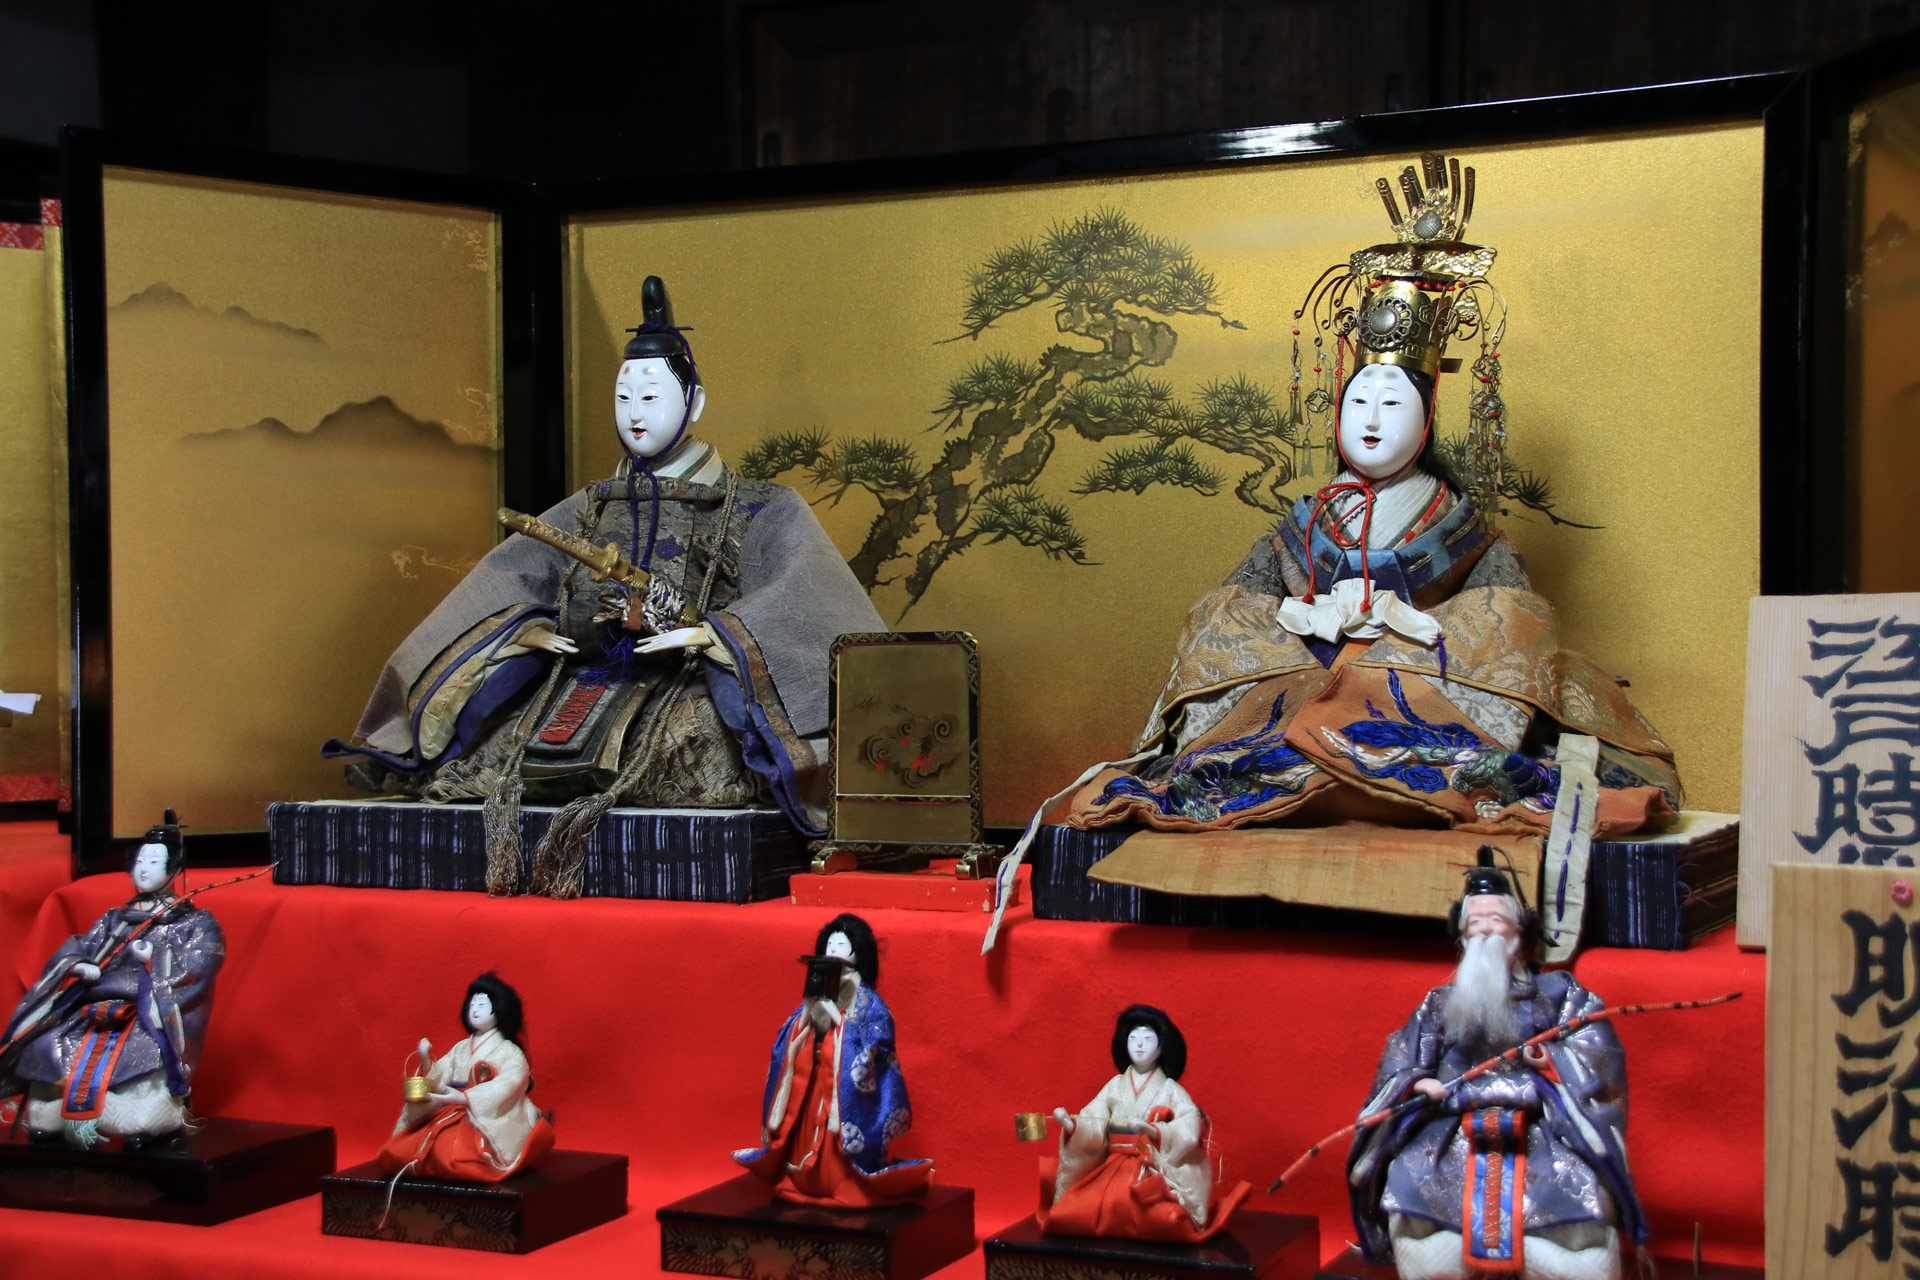 これは江戸時代の雛人形です。江戸時代から続く文化なんですね。